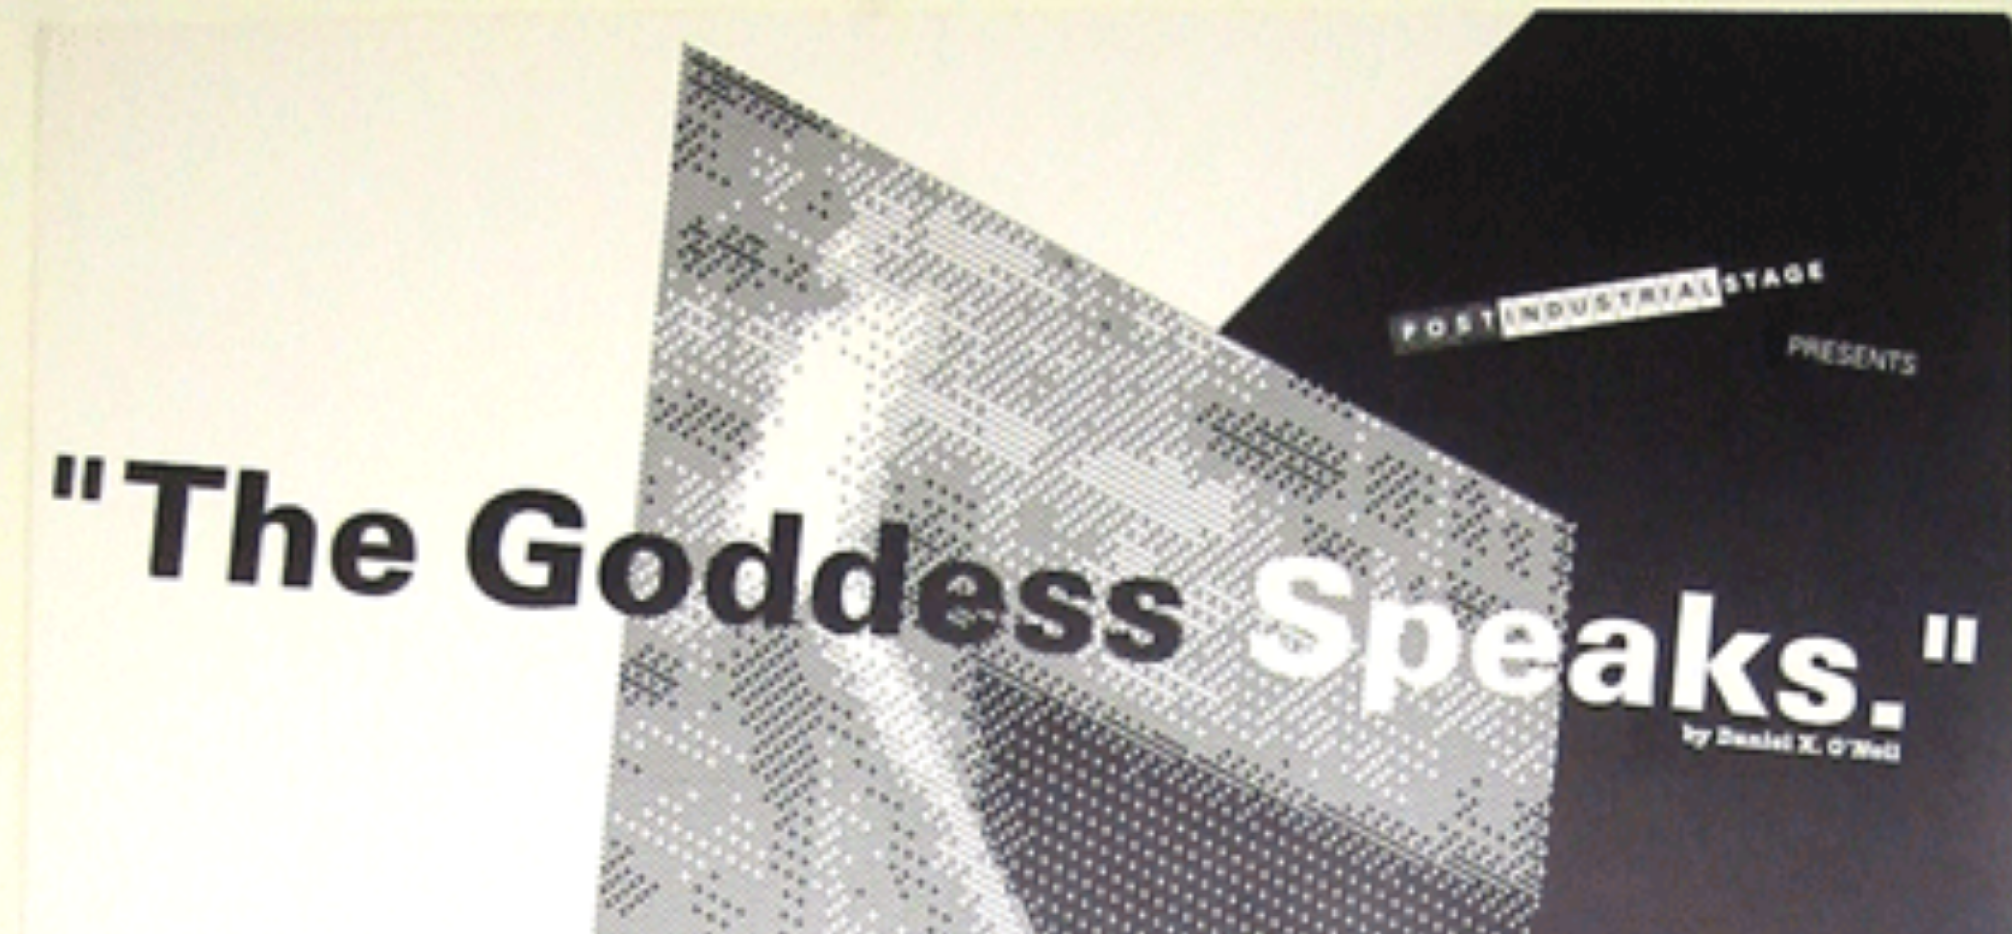 1990: “The Goddess Speaks.”